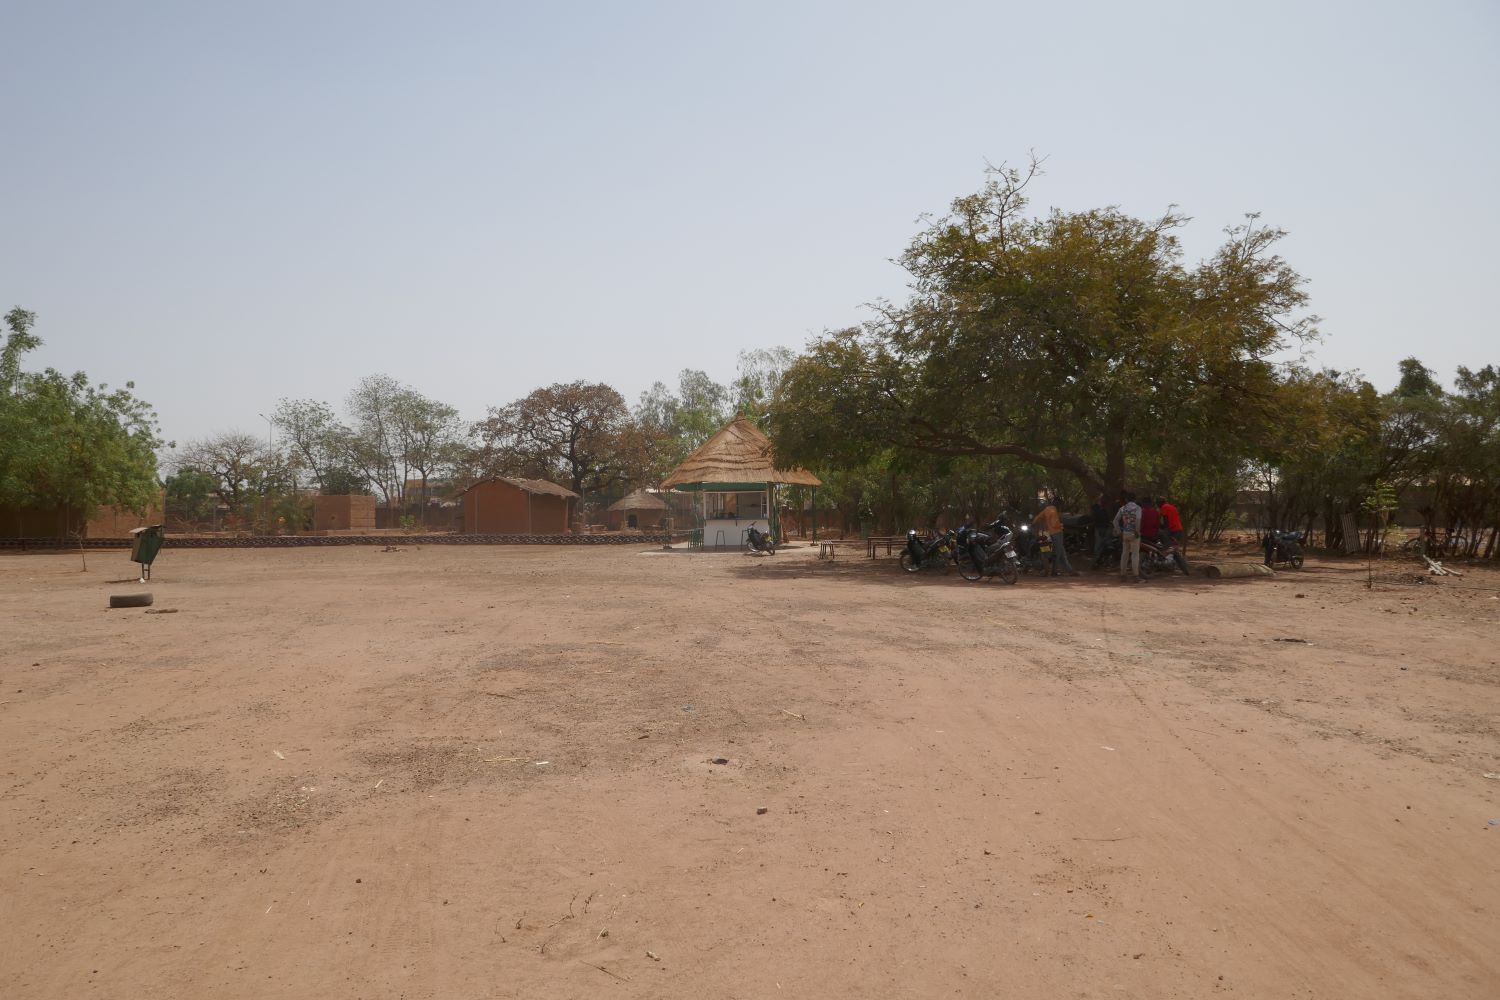 Le musée national, situé à l’est de Ouagadougou, occupe une propriété de 29 hectares. Au fond se trouve la cantine avec des tables parsemées sous les arbres où les gens aiment s’asseoir et discuter d’histoire, d’art et de philosophie © Globe Reporters